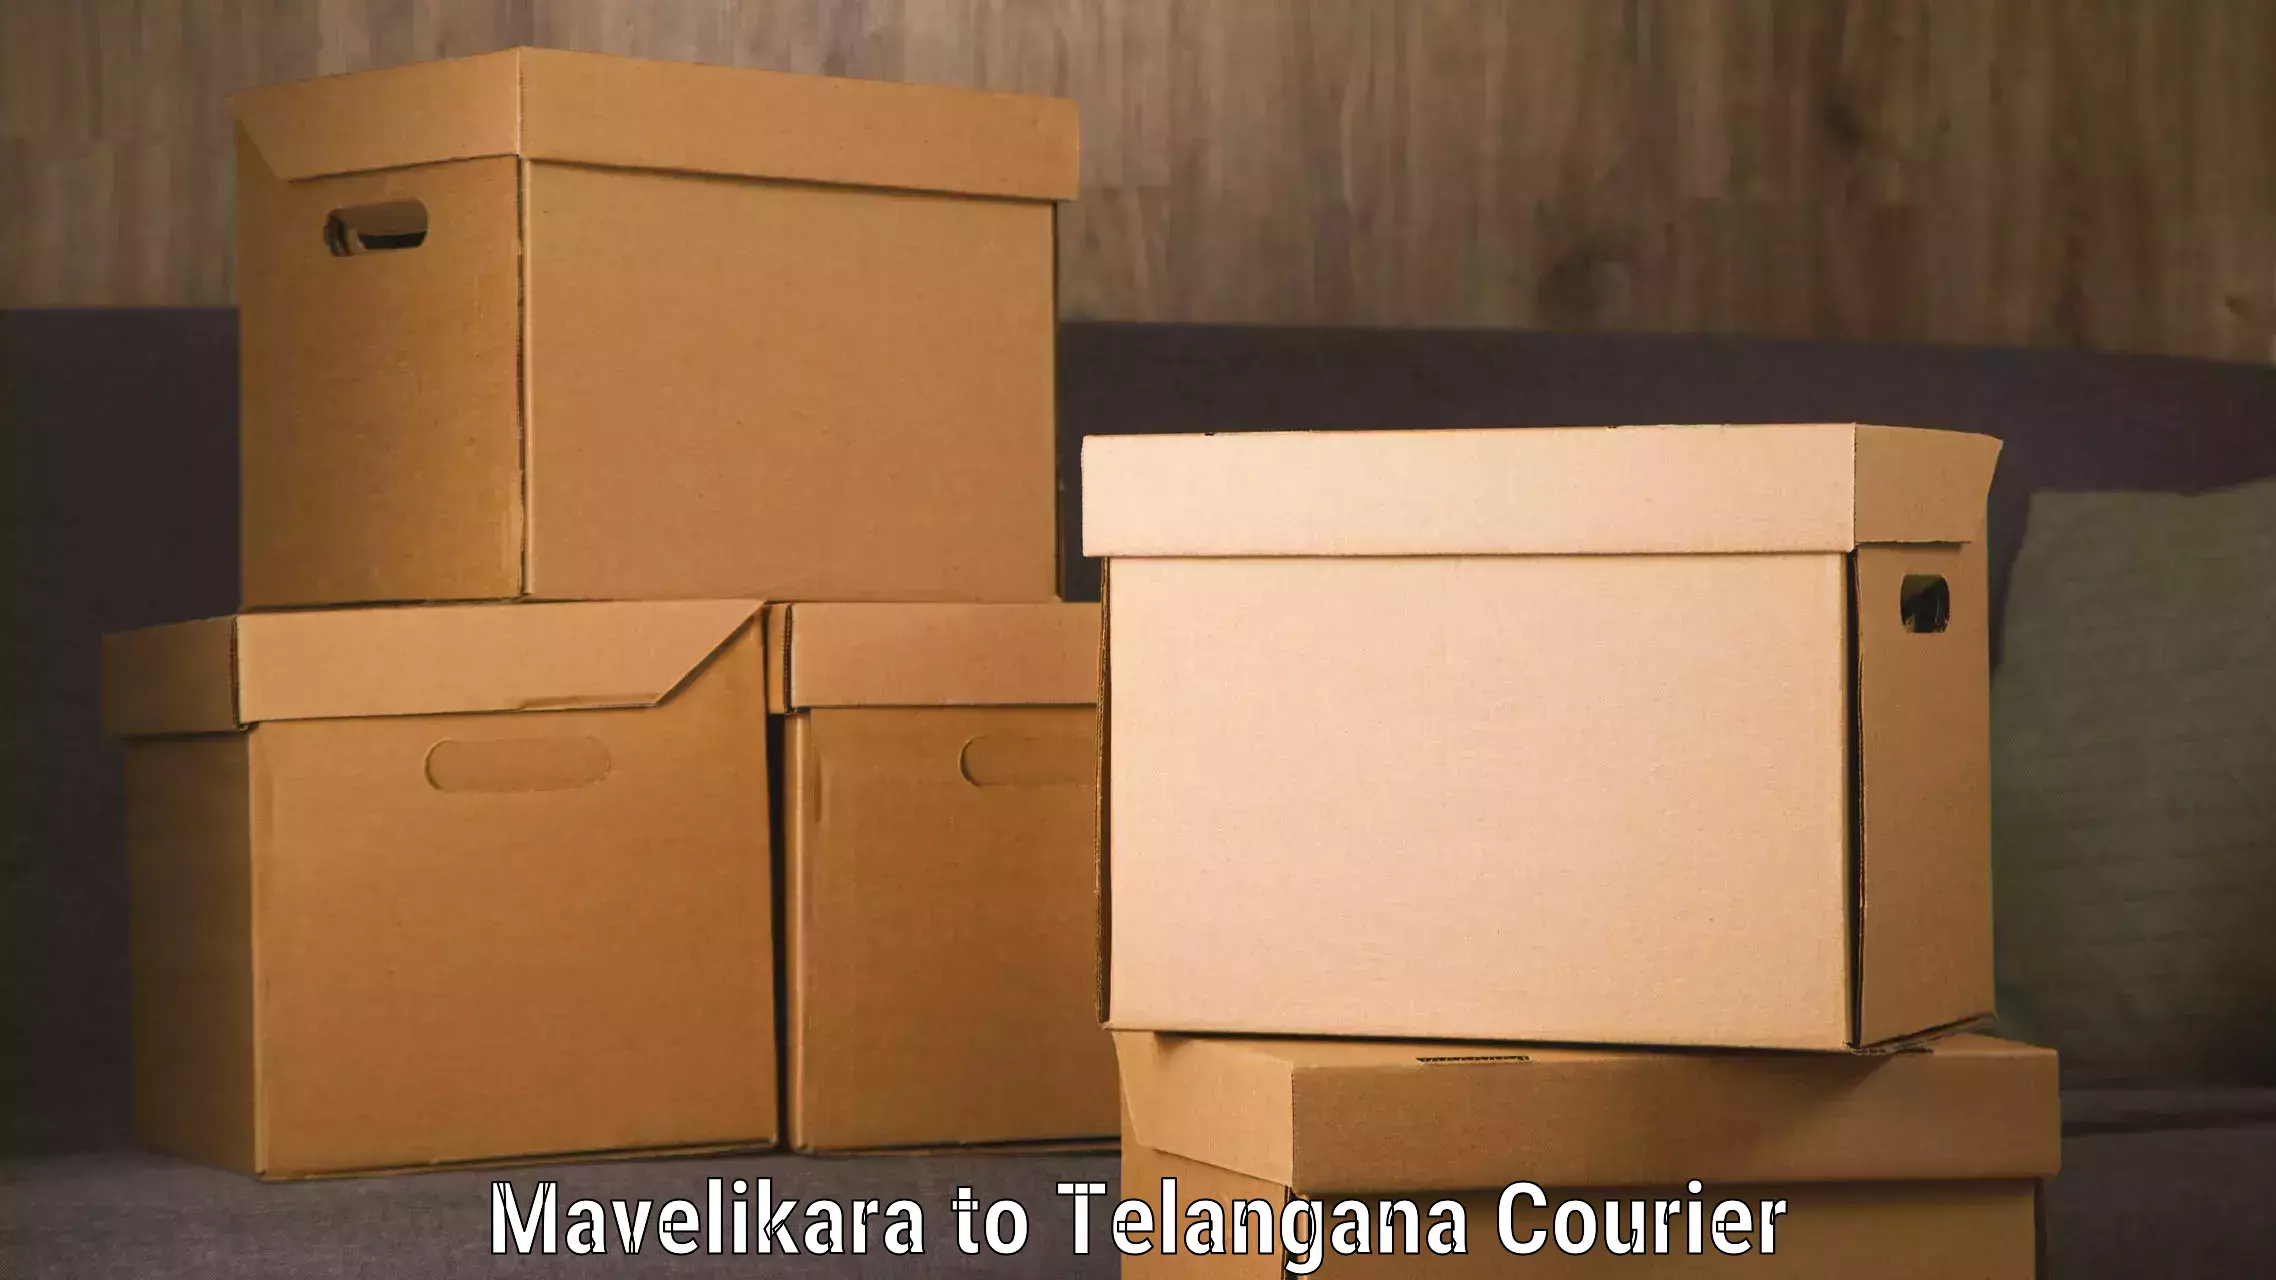 Next-day freight services Mavelikara to Kothakota